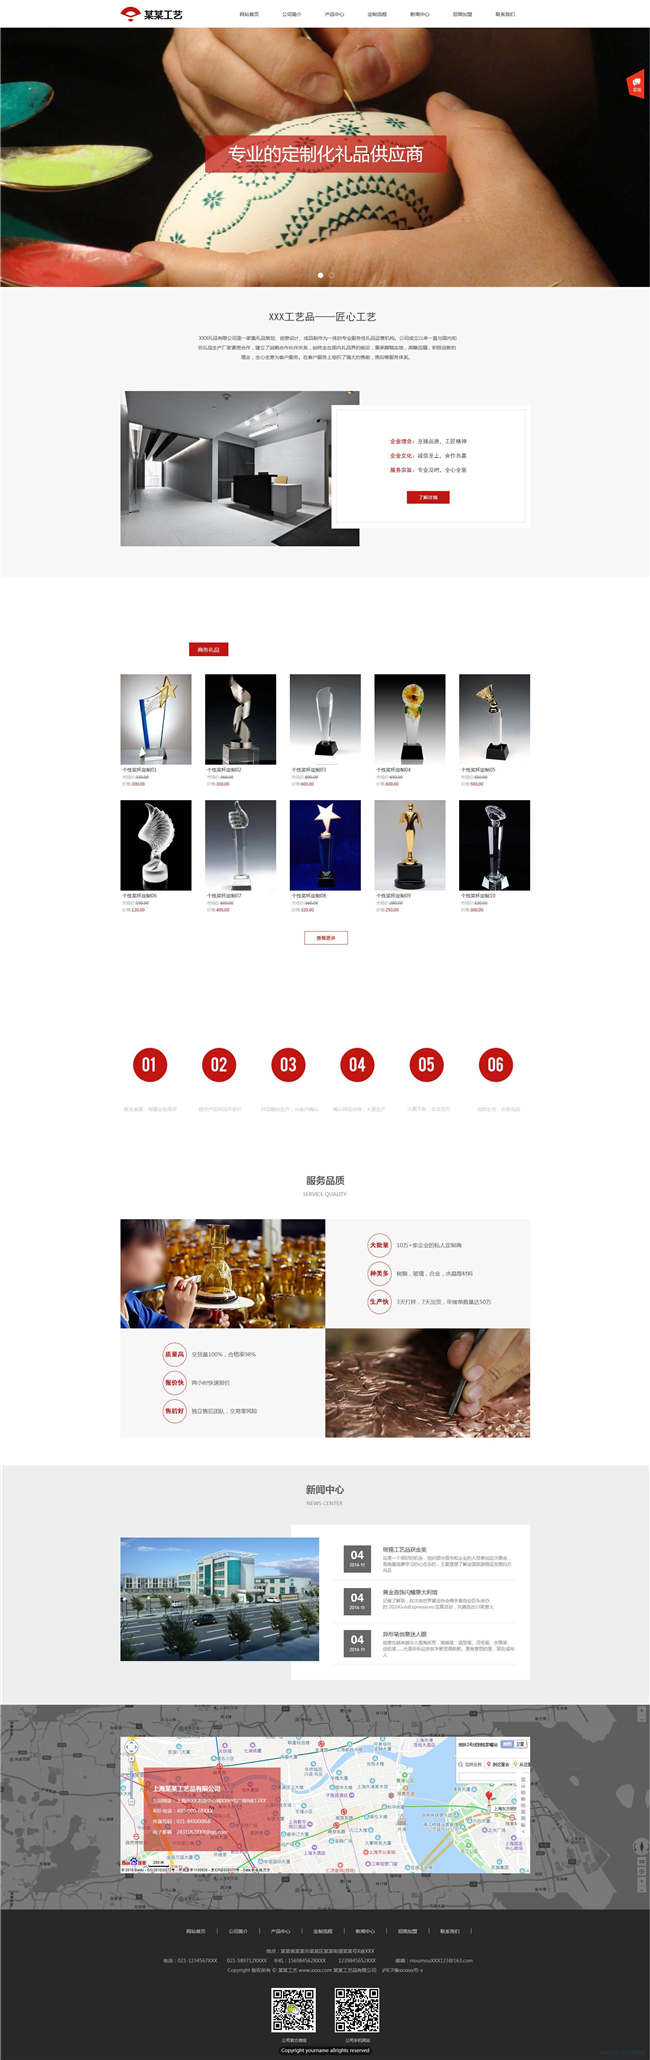 工艺制品礼品工艺品玩具小商品网站WP整站模板(含手机版)预览图